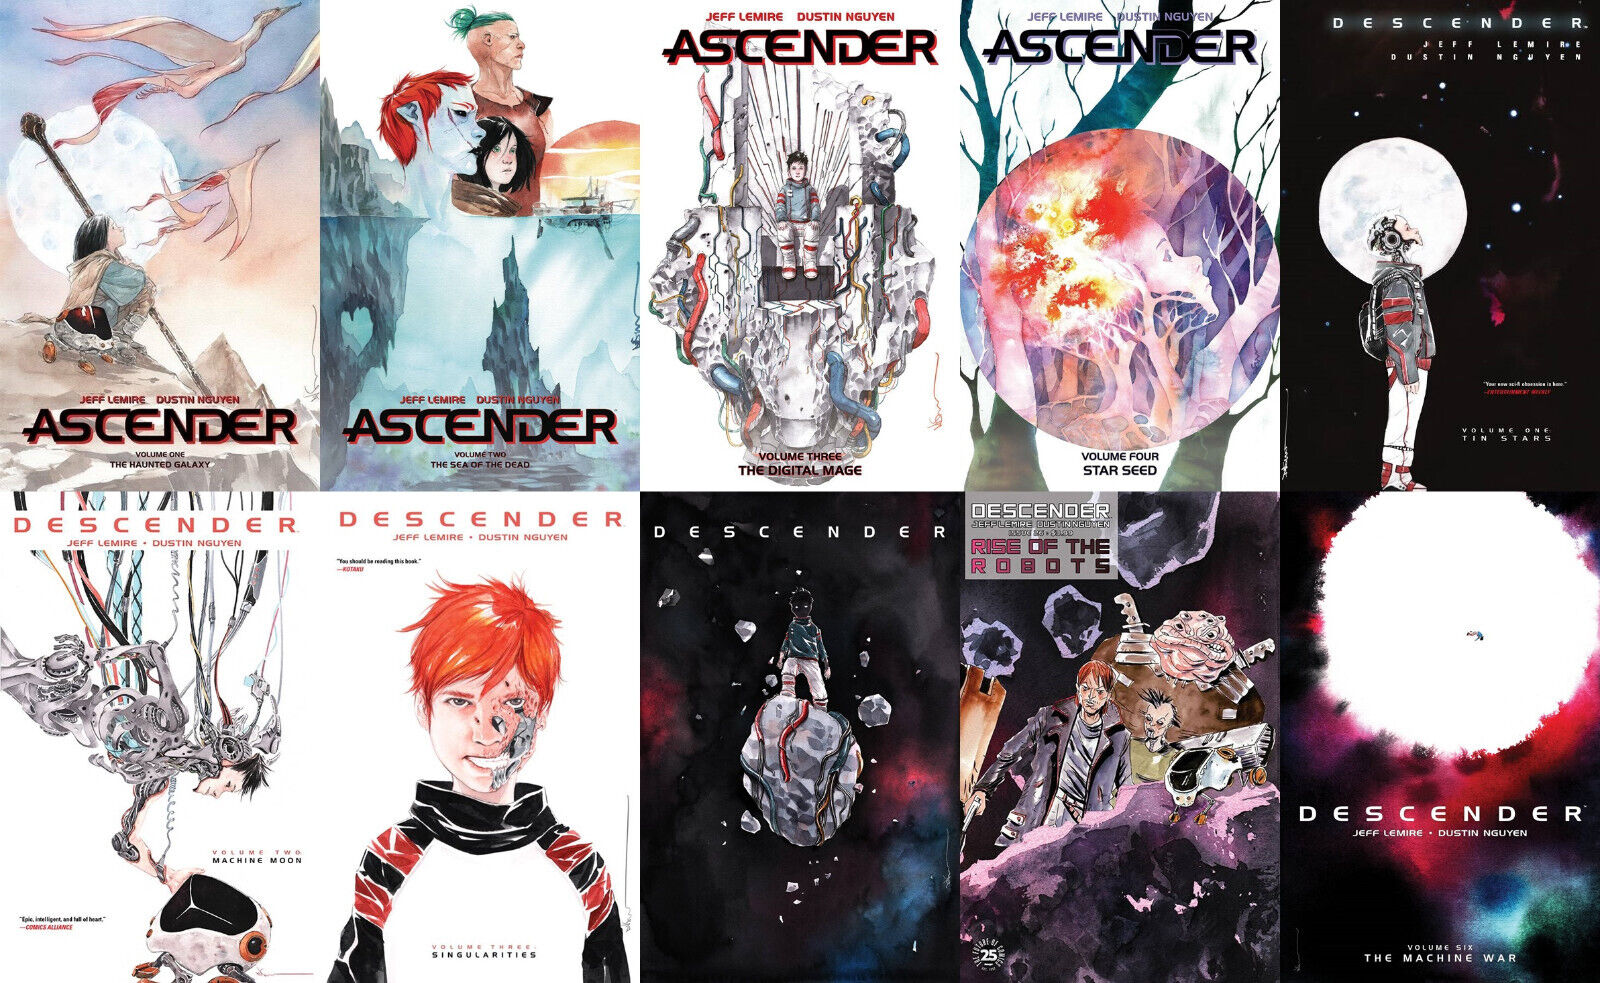 Ascender Vol 1-4 & Descender Vol 1-6 Softcover TPB Graphic Novel  Set